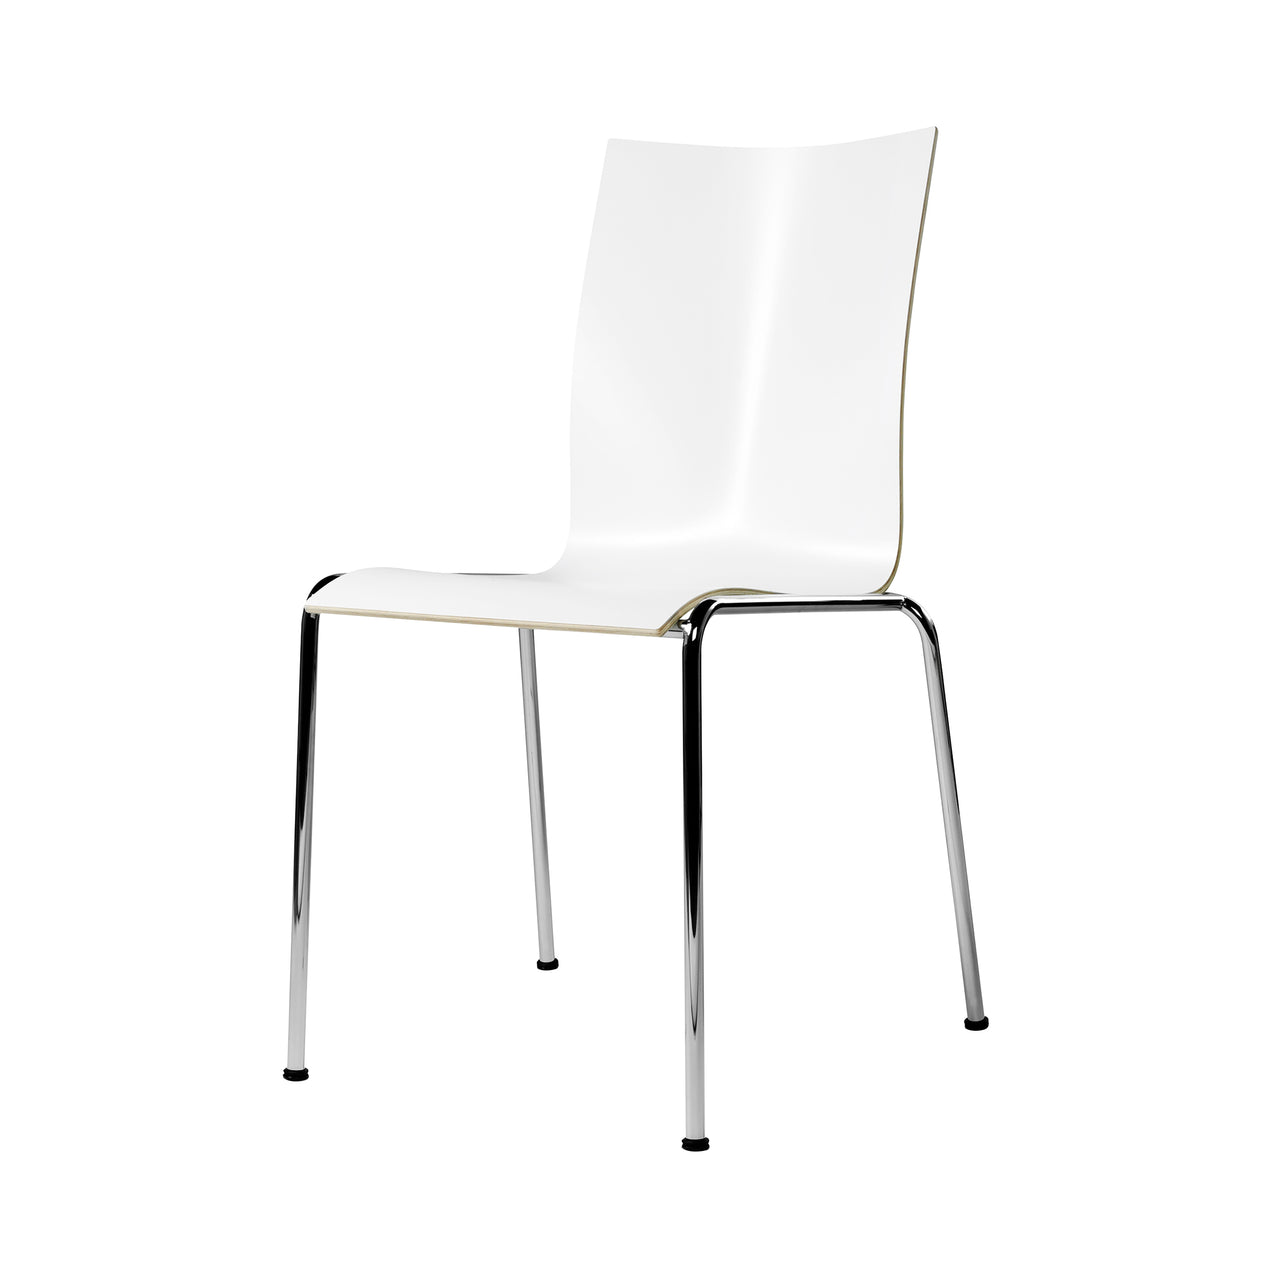 Chairik High 104 Chair: Melamine + White + Polished Chrome